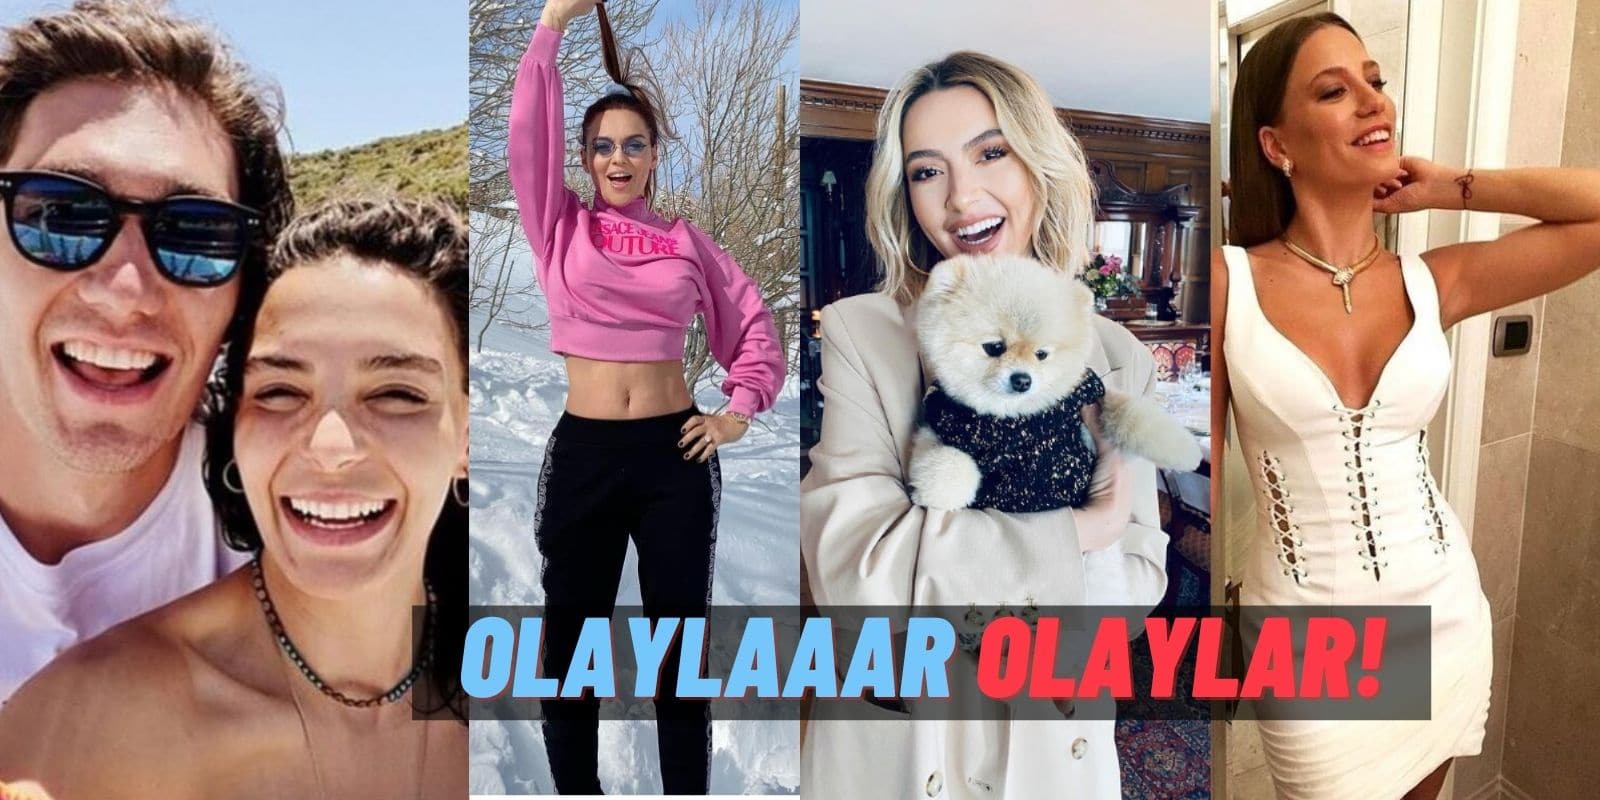 Dedikodu Kazanı: Uraz Kaygılaroğlu Teklifi Reddetti, Hadise’den Yeni Single, Esra Erol’dan Evlilik Açıklaması